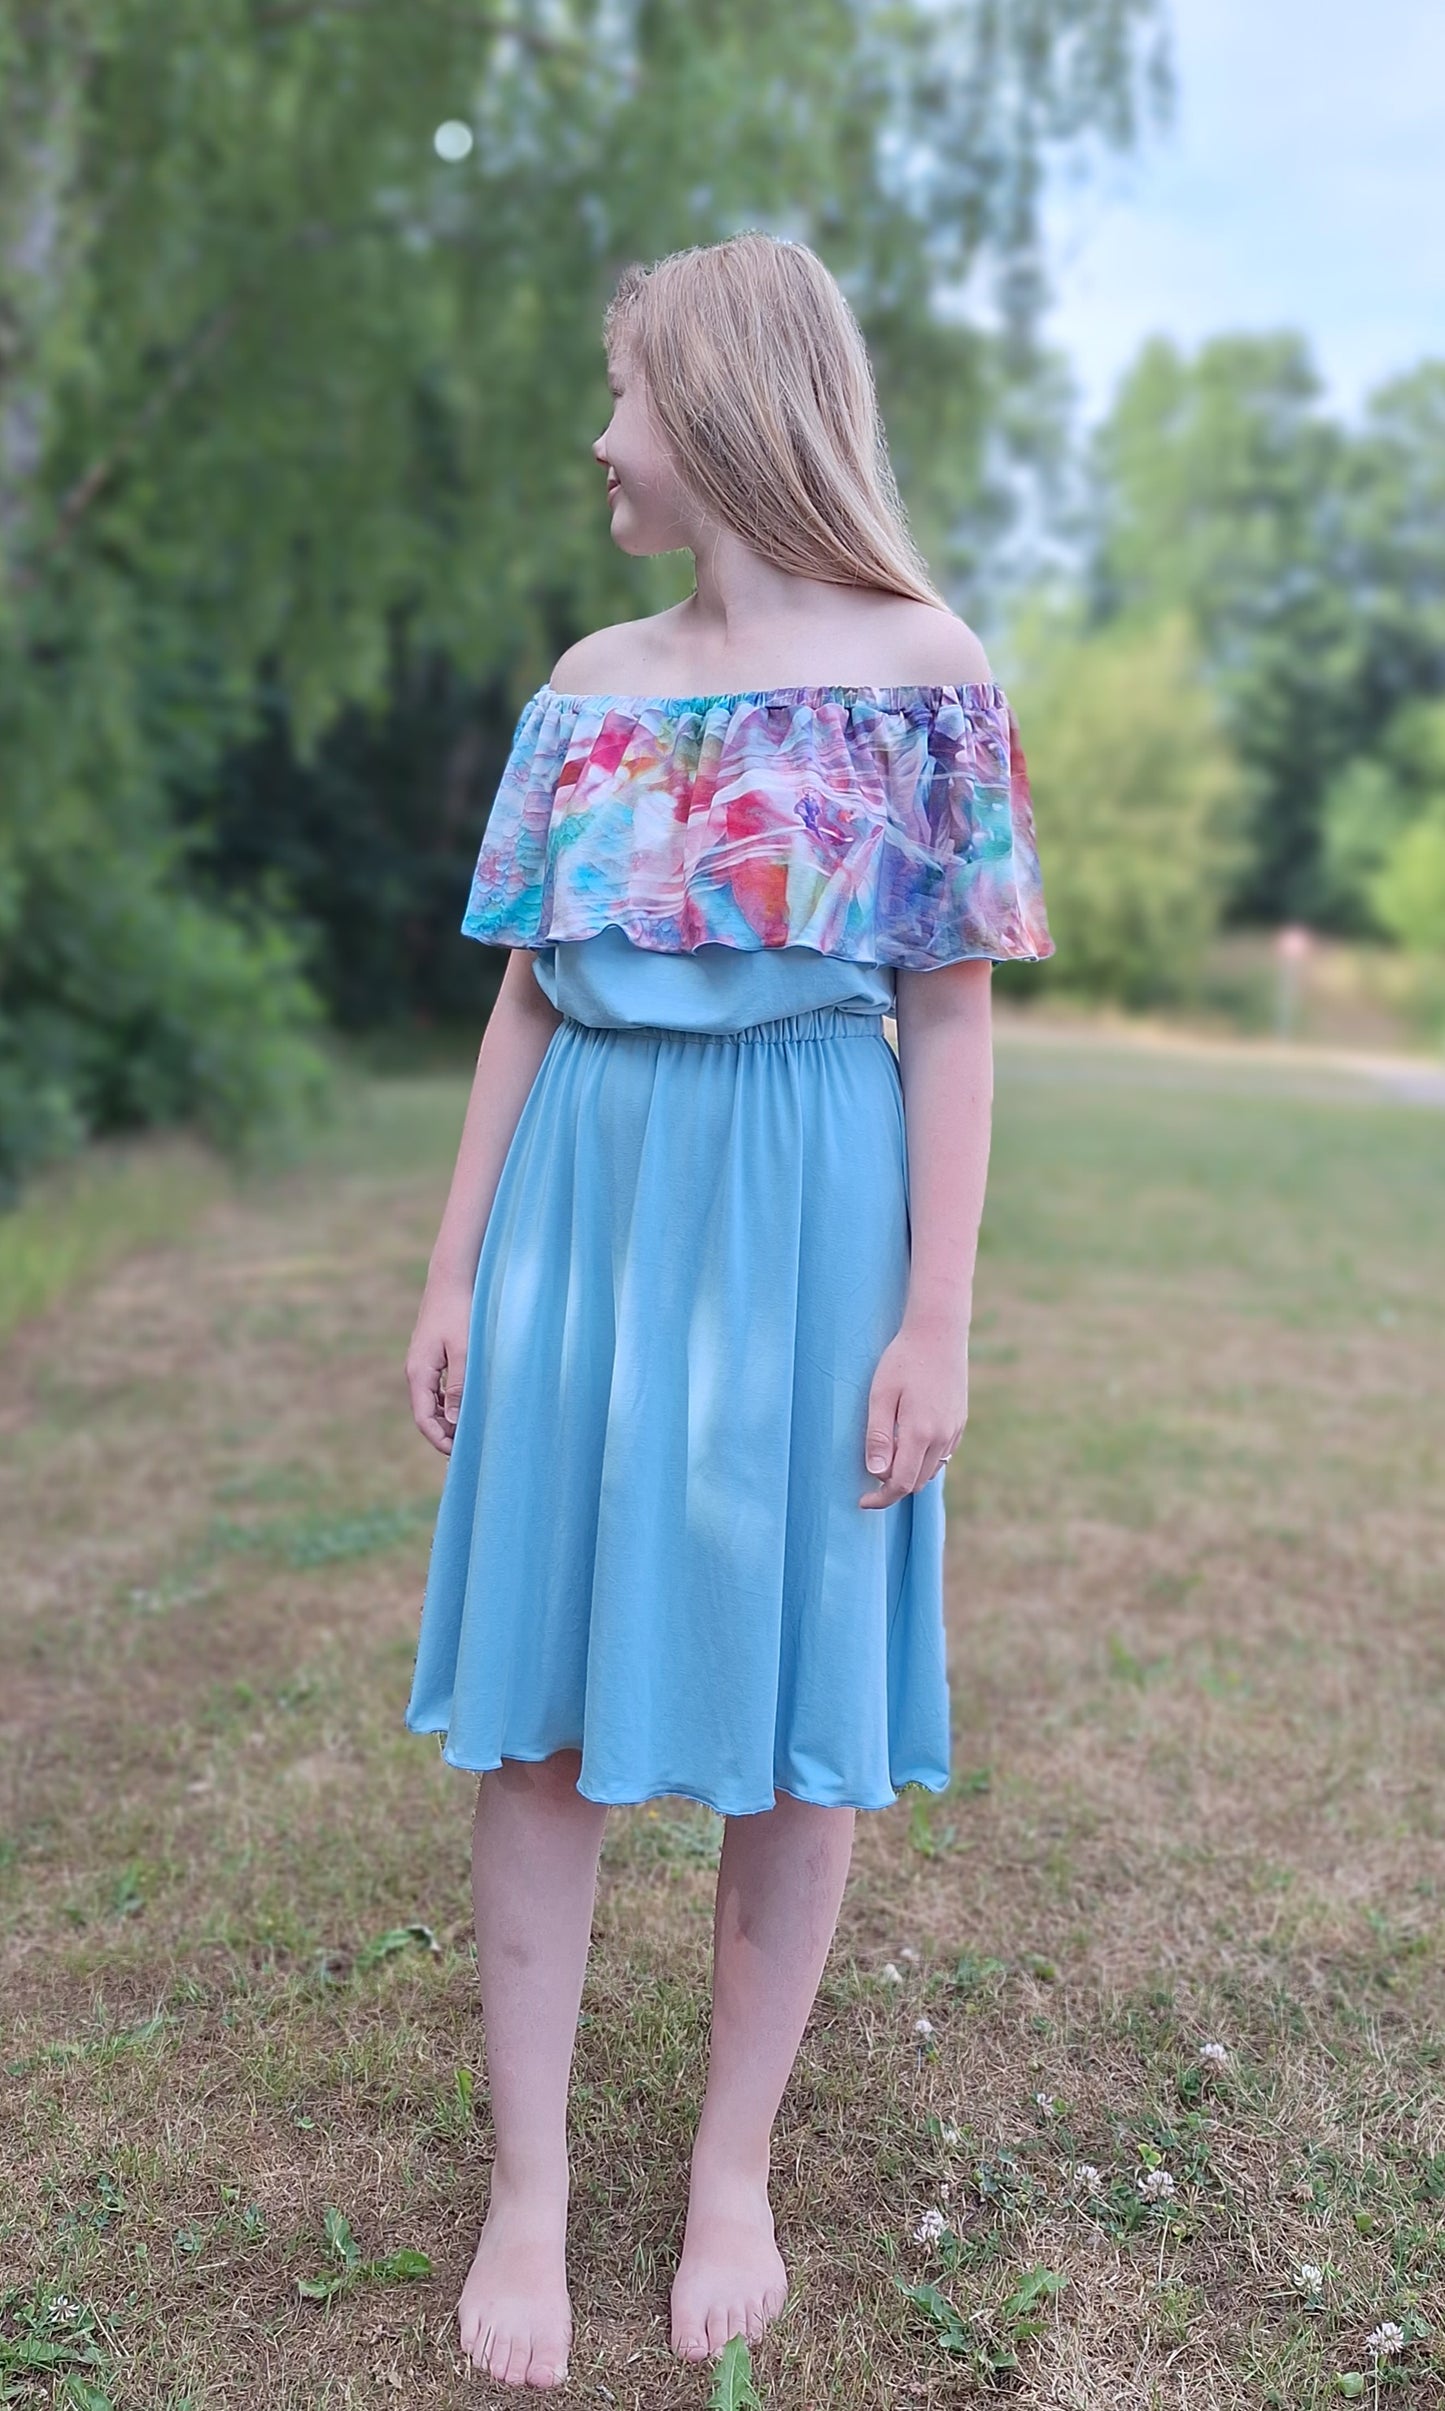 Bridget Dress/Top/Skirt